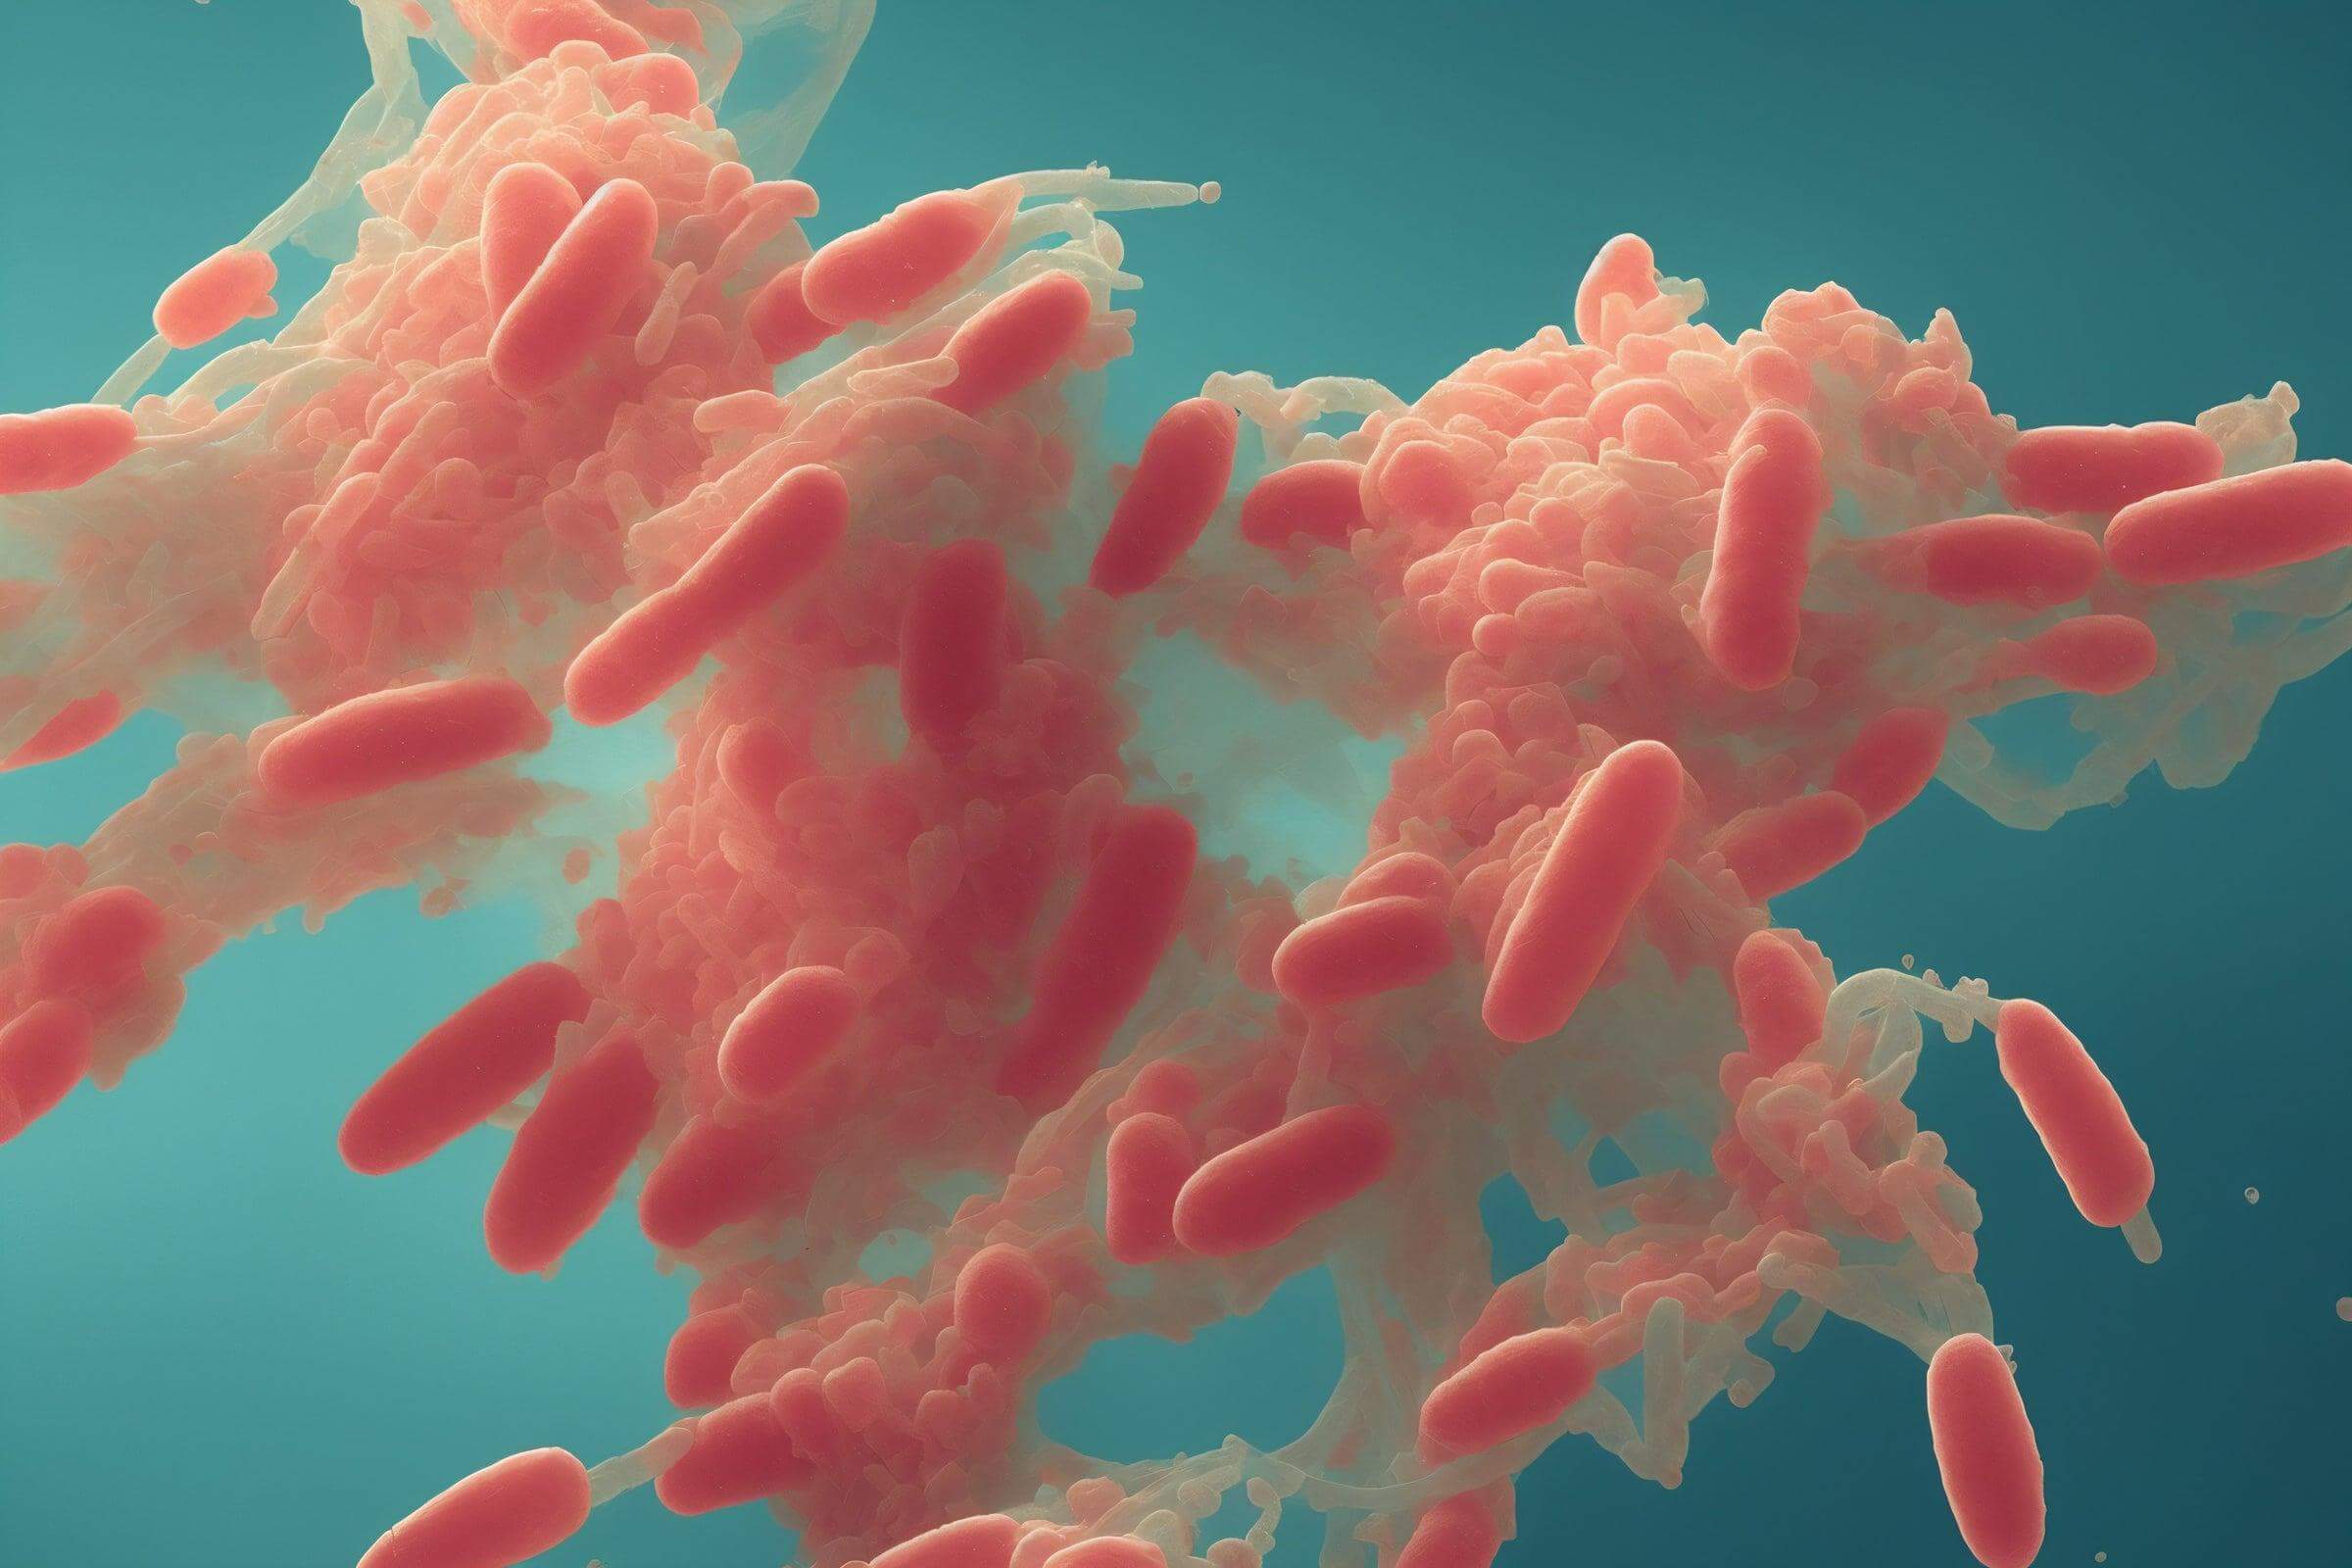 История ботулизма. Clostridium botulinum – бактерии, которые в условиях низкого содержания кислорода вырабатывают опасные токсины (ботулотоксины). Изображение: www.hygiena.com. Фото.